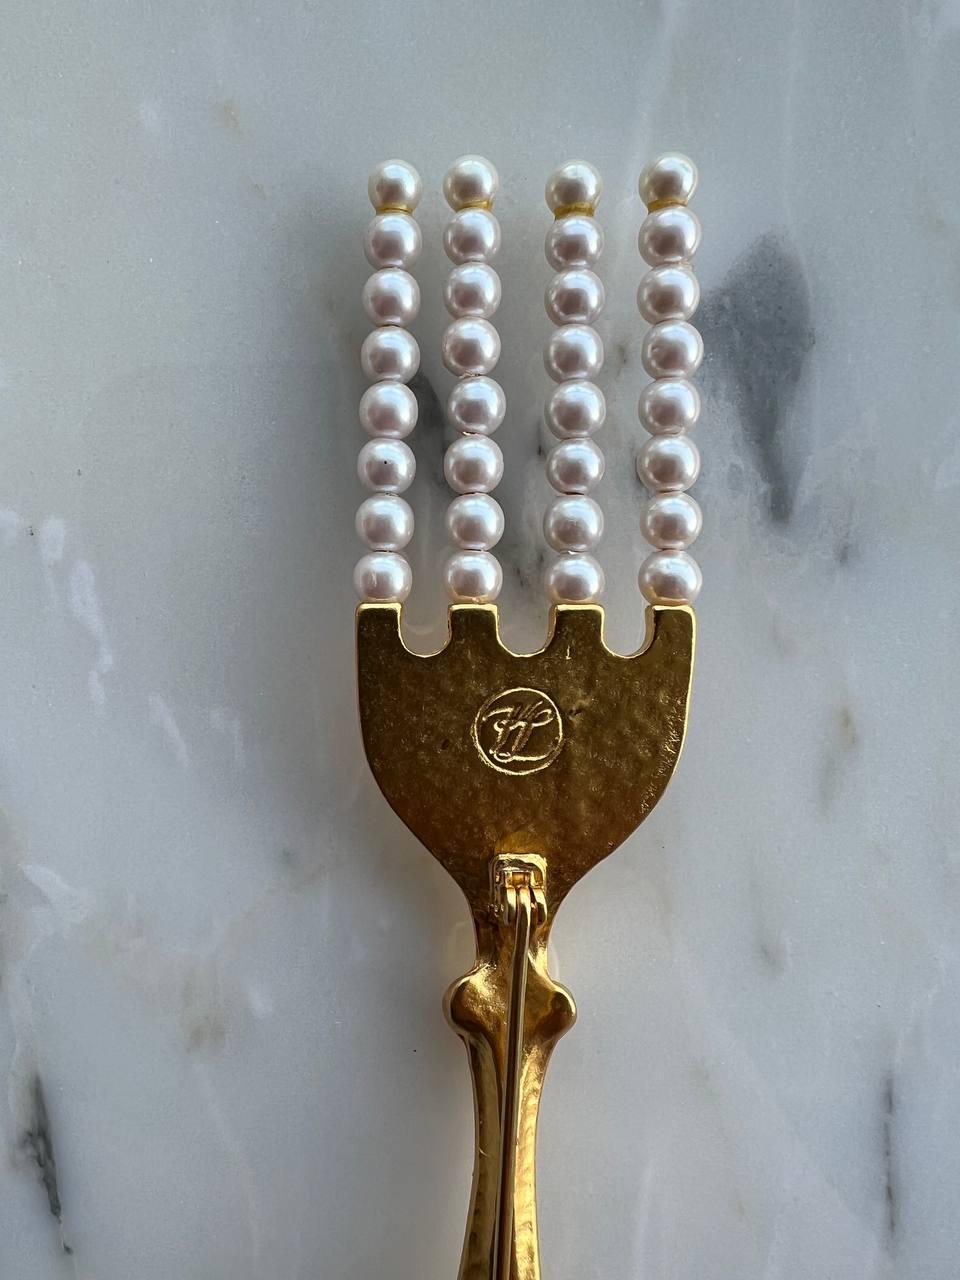 Broche Vintage By de Karl Lagerfeld représentant une fourchette avec des dents en fausses perles plaquées or 24k. 

Signé. Monogrammes KL. 

Période : 1990s

Condit : très bien. 

Longueur - 5.25